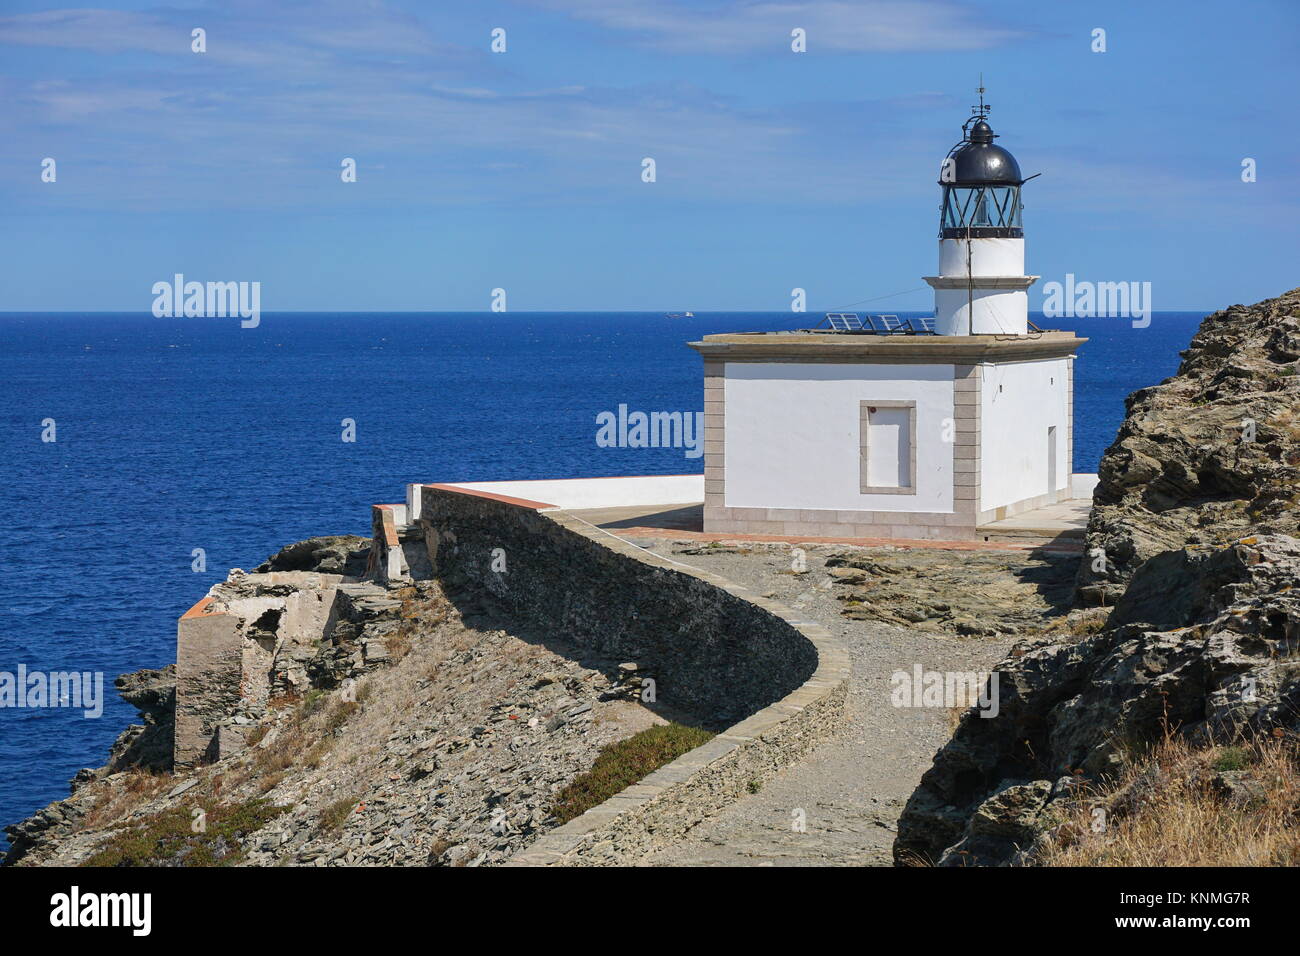 Spain Cadaques Cala Nans lighthouse on the Mediterranean sea shore, Costa Brava, Cap de Creus, Alt Emporda, Catalonia Stock Photo